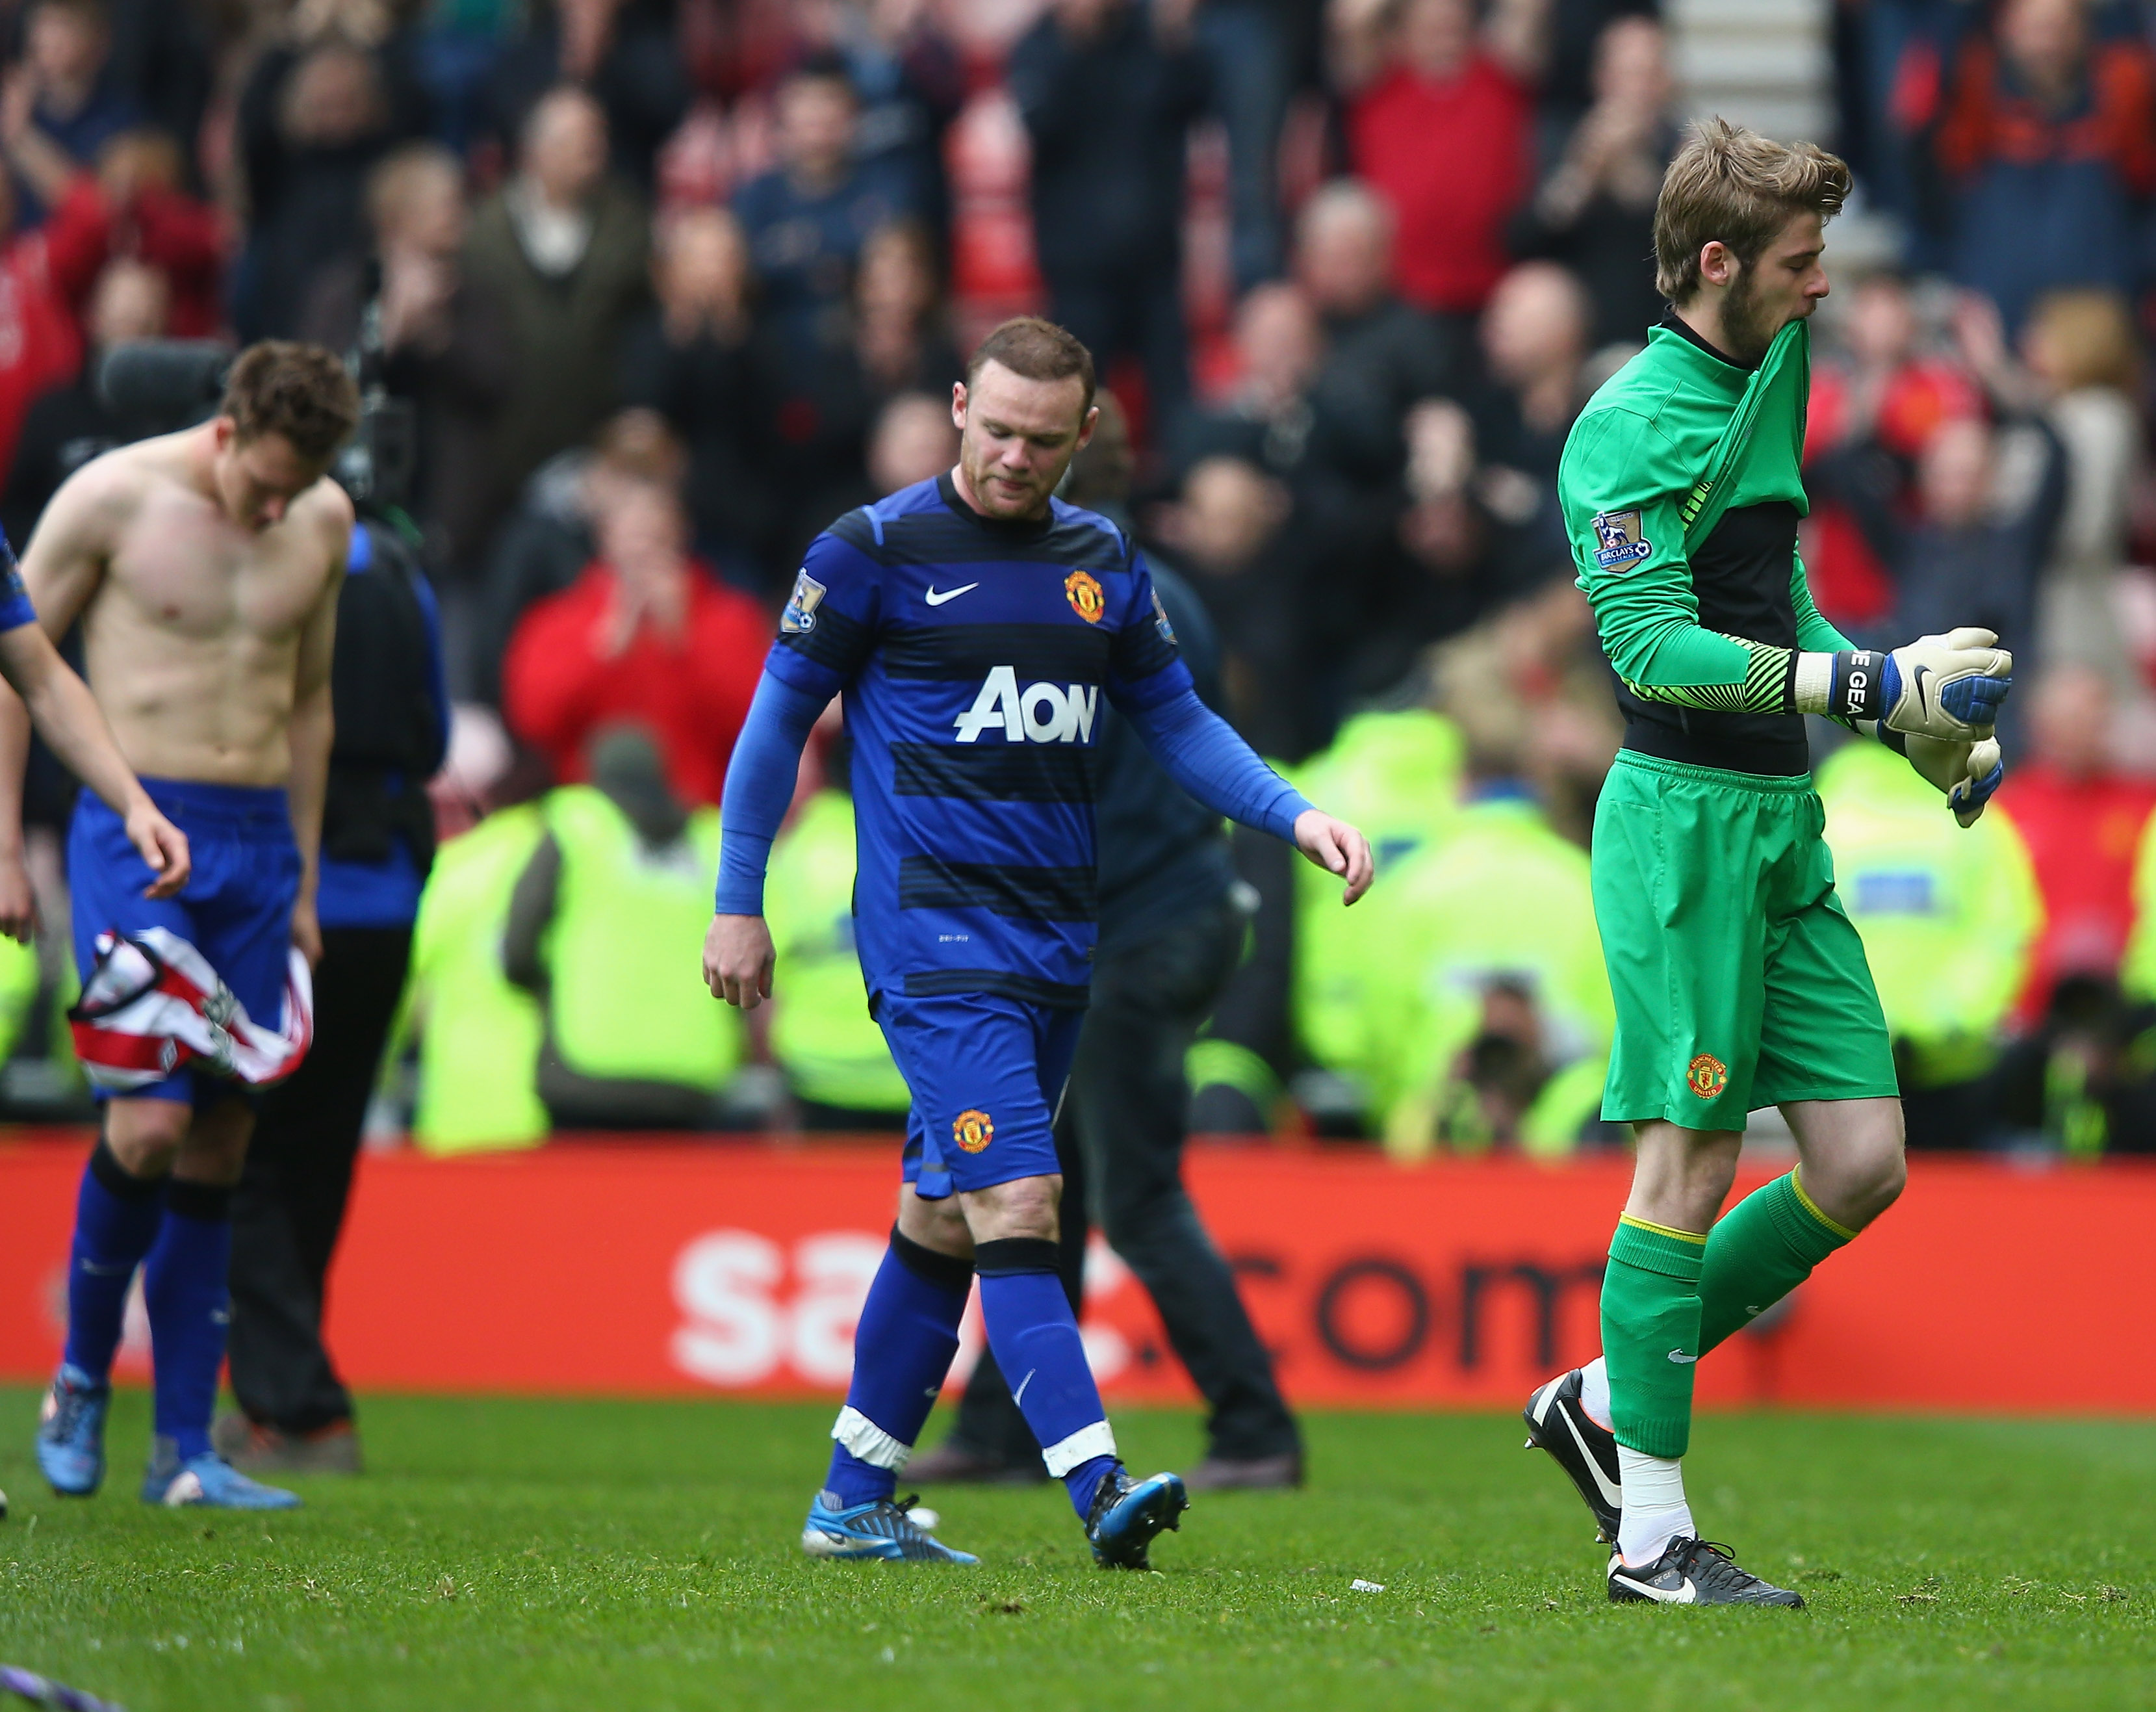 United-spelarna deppade efter matchen - trots segern med 1-0.